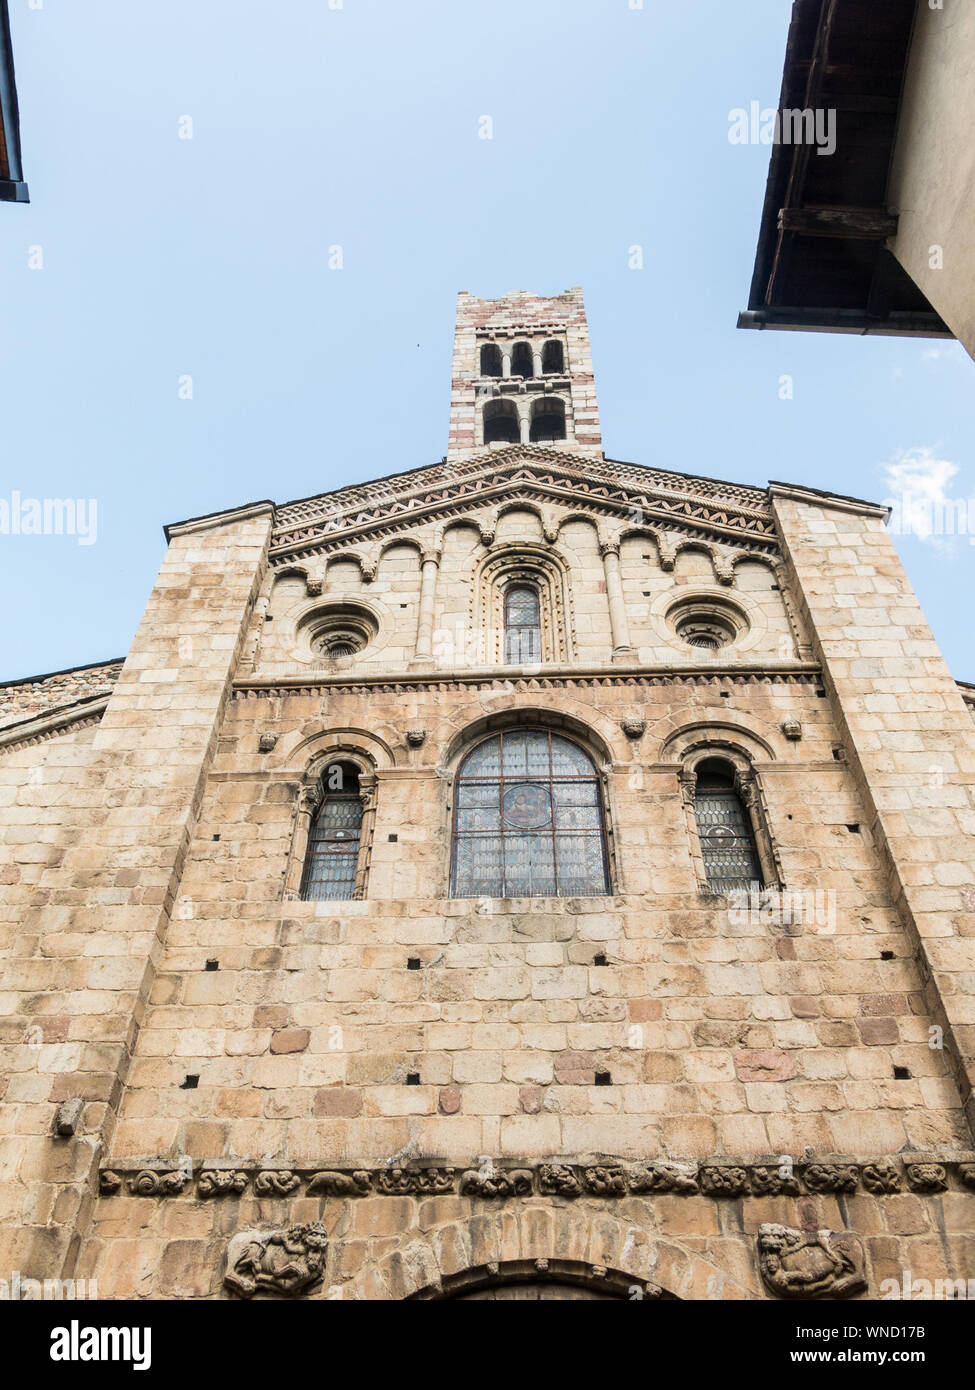 La Cathédrale de Santa Maria de Urgel est de style roman dans le style et date du 12ème siècle. Seo de Urgel. La Catalogne, Espagne. L'Europe Banque D'Images